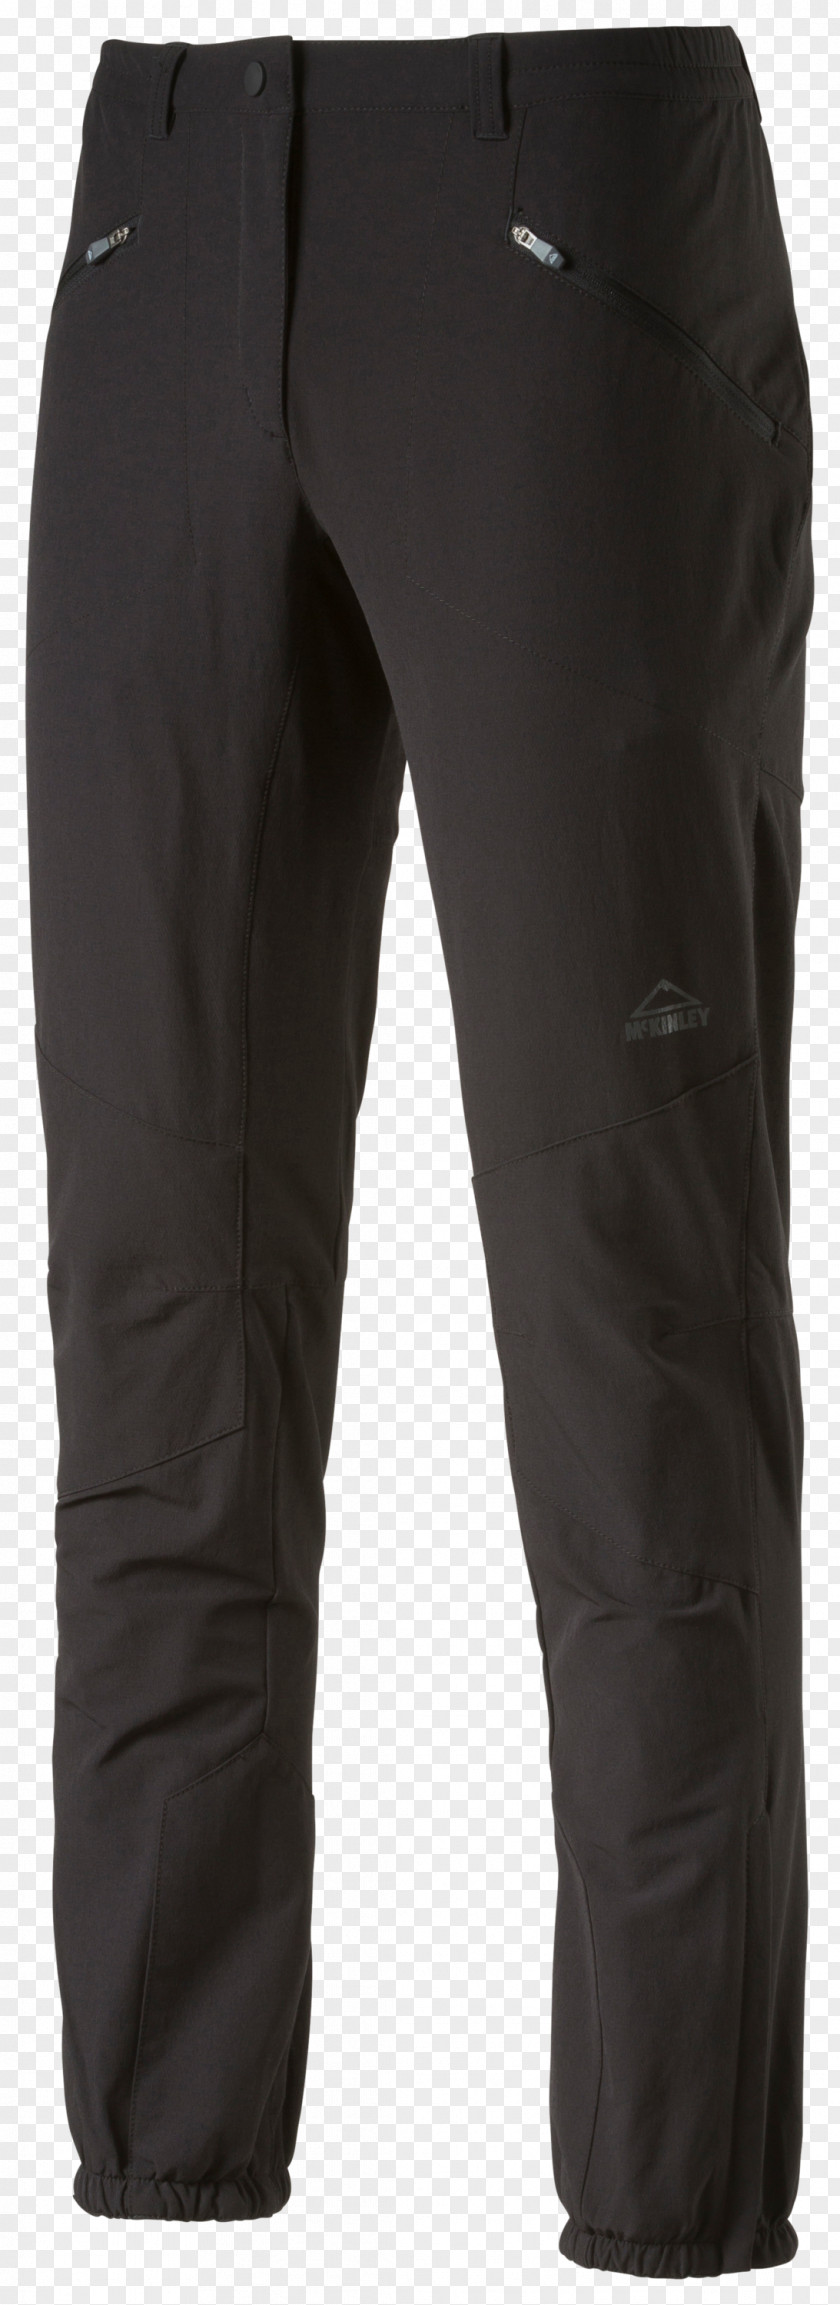 Jeans Amazon.com Klim Clothing Pants PNG